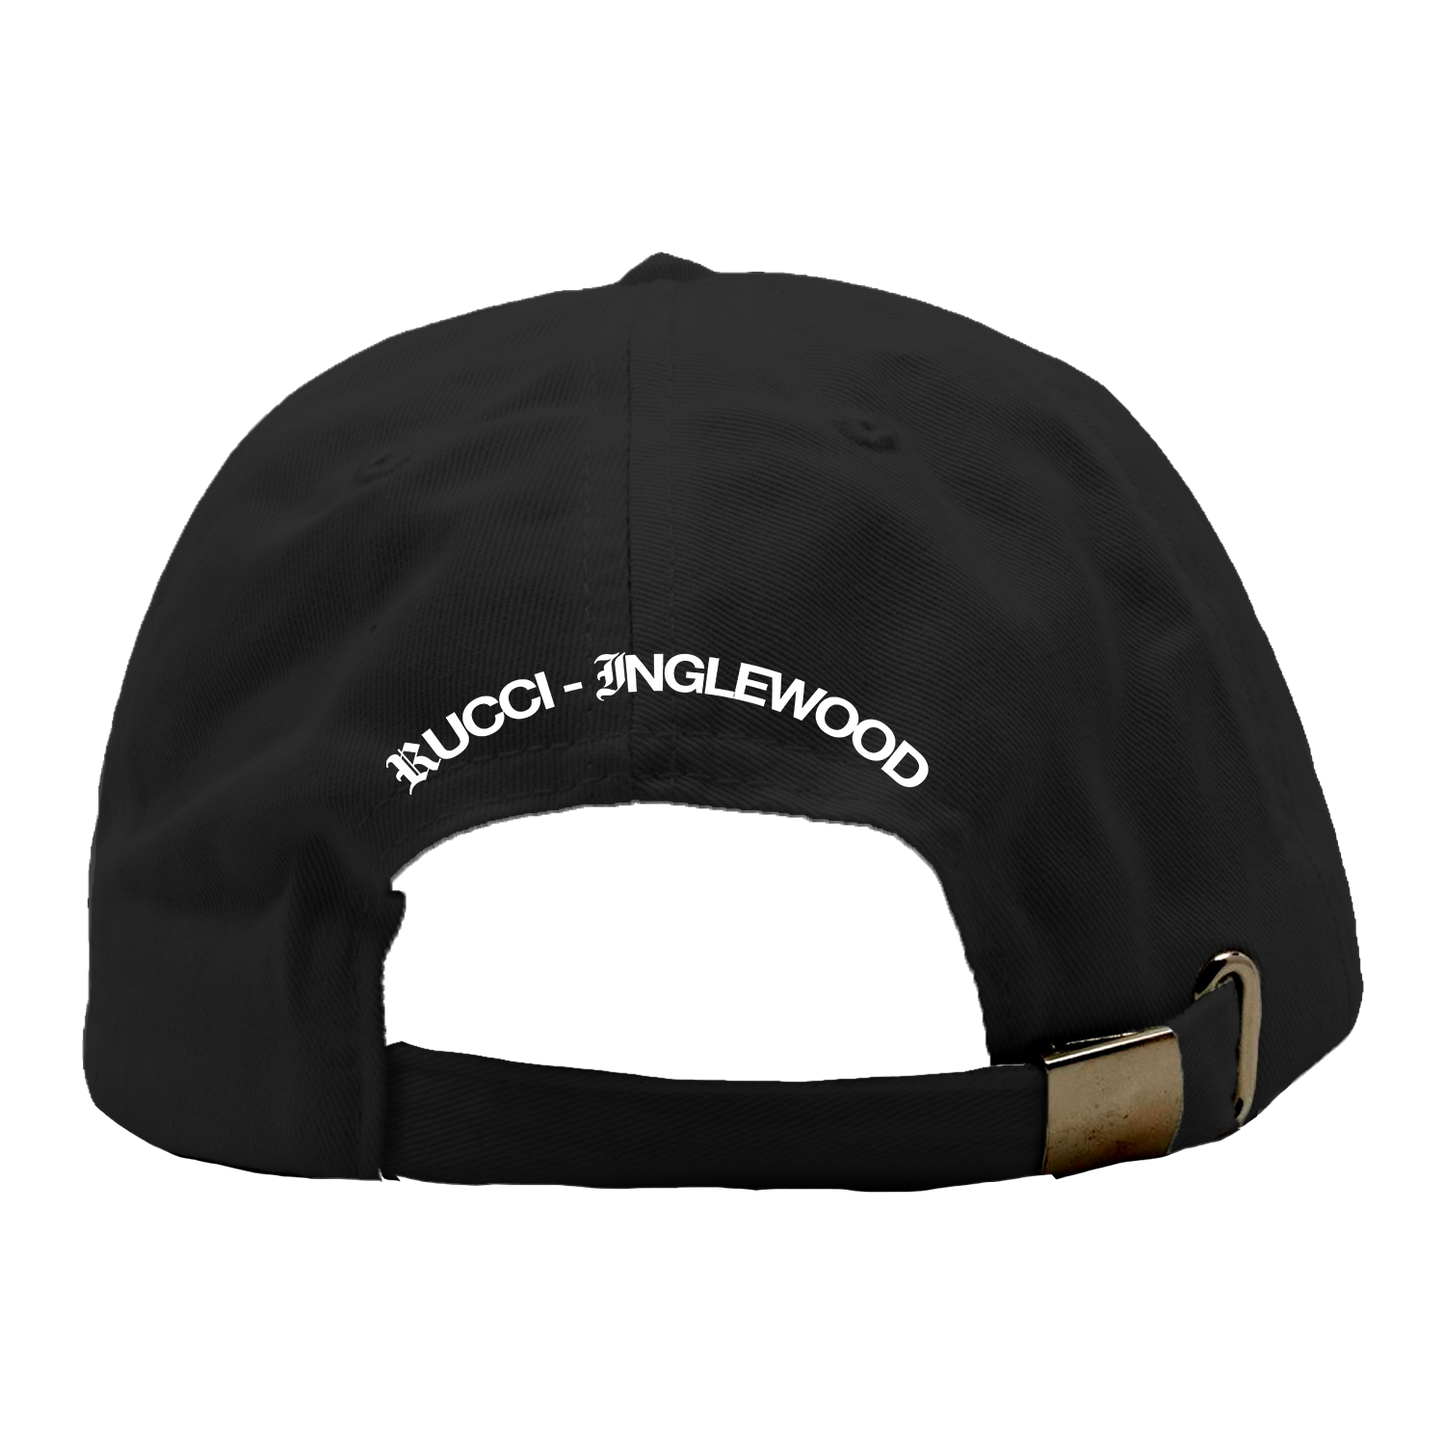 Rucci - Midget Dad Hat